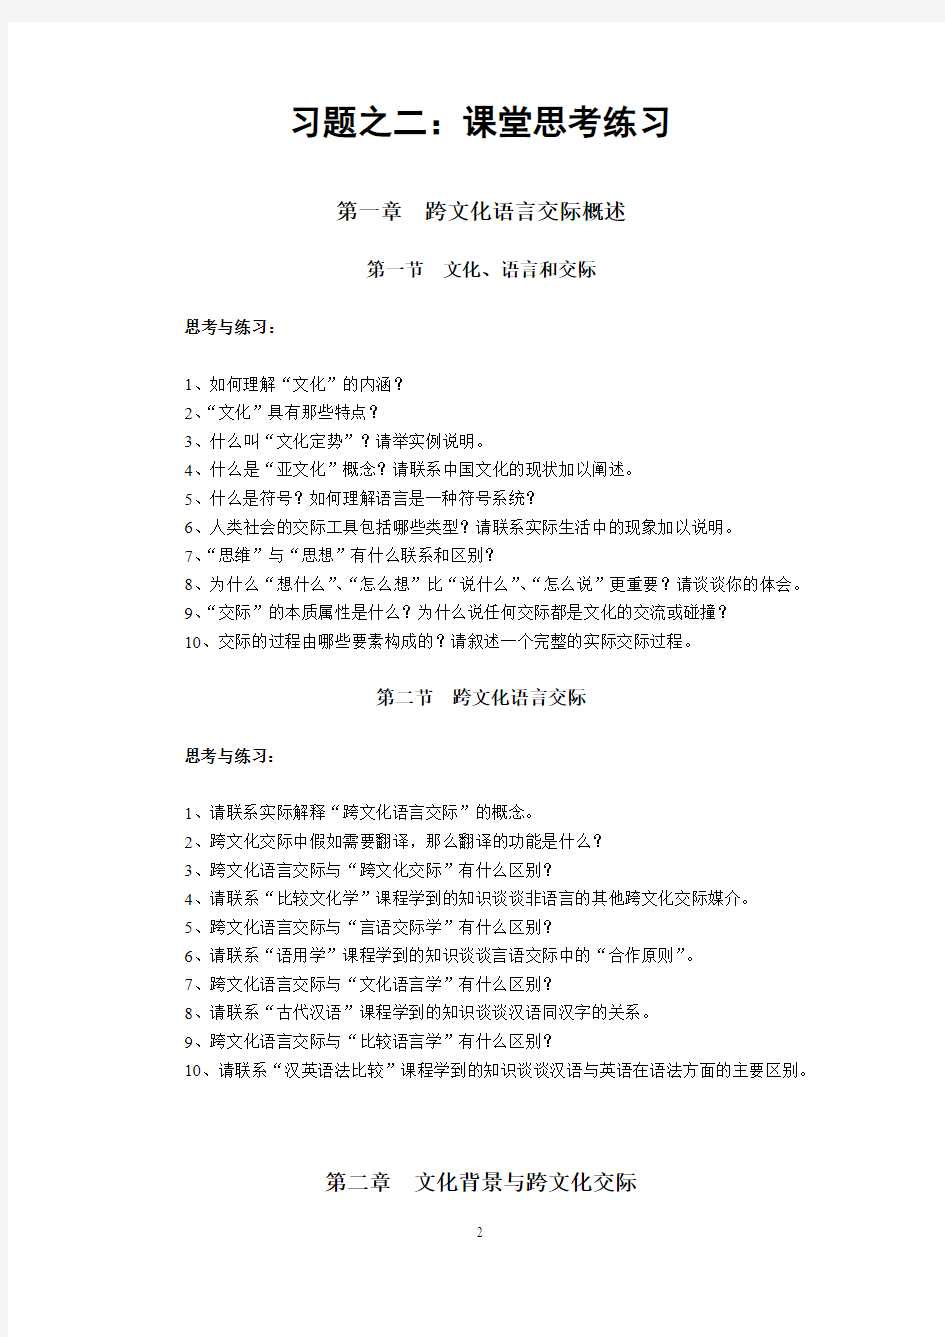 上海师范大学精品课程